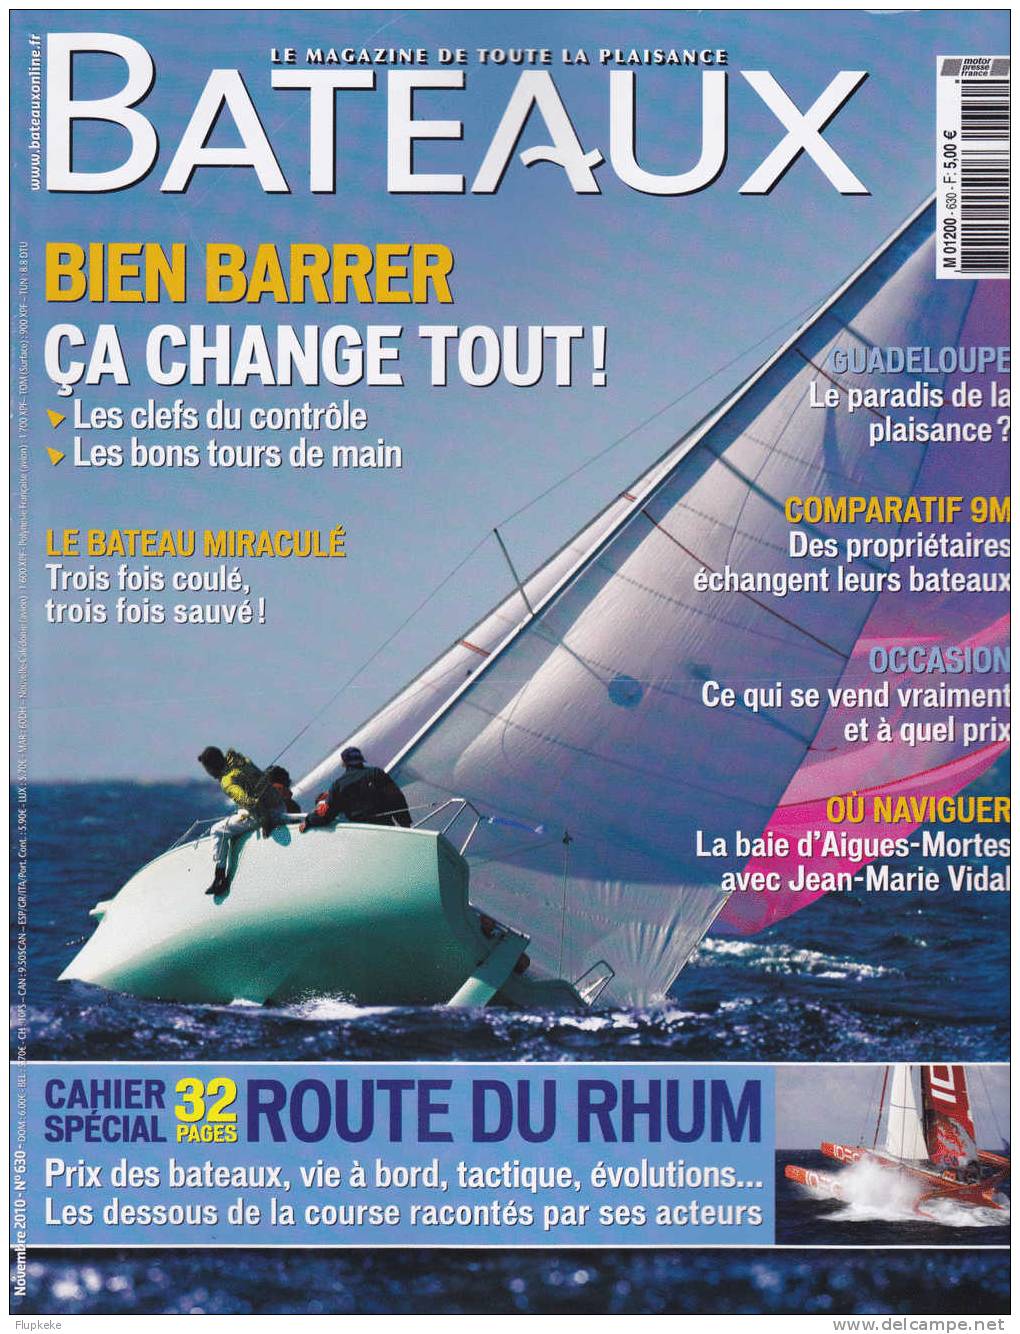 Bateaux 630 Novembre 2010 La Route Du Rhum Cahier Spécial Bien Barrer ça Change Tout! - Bateau